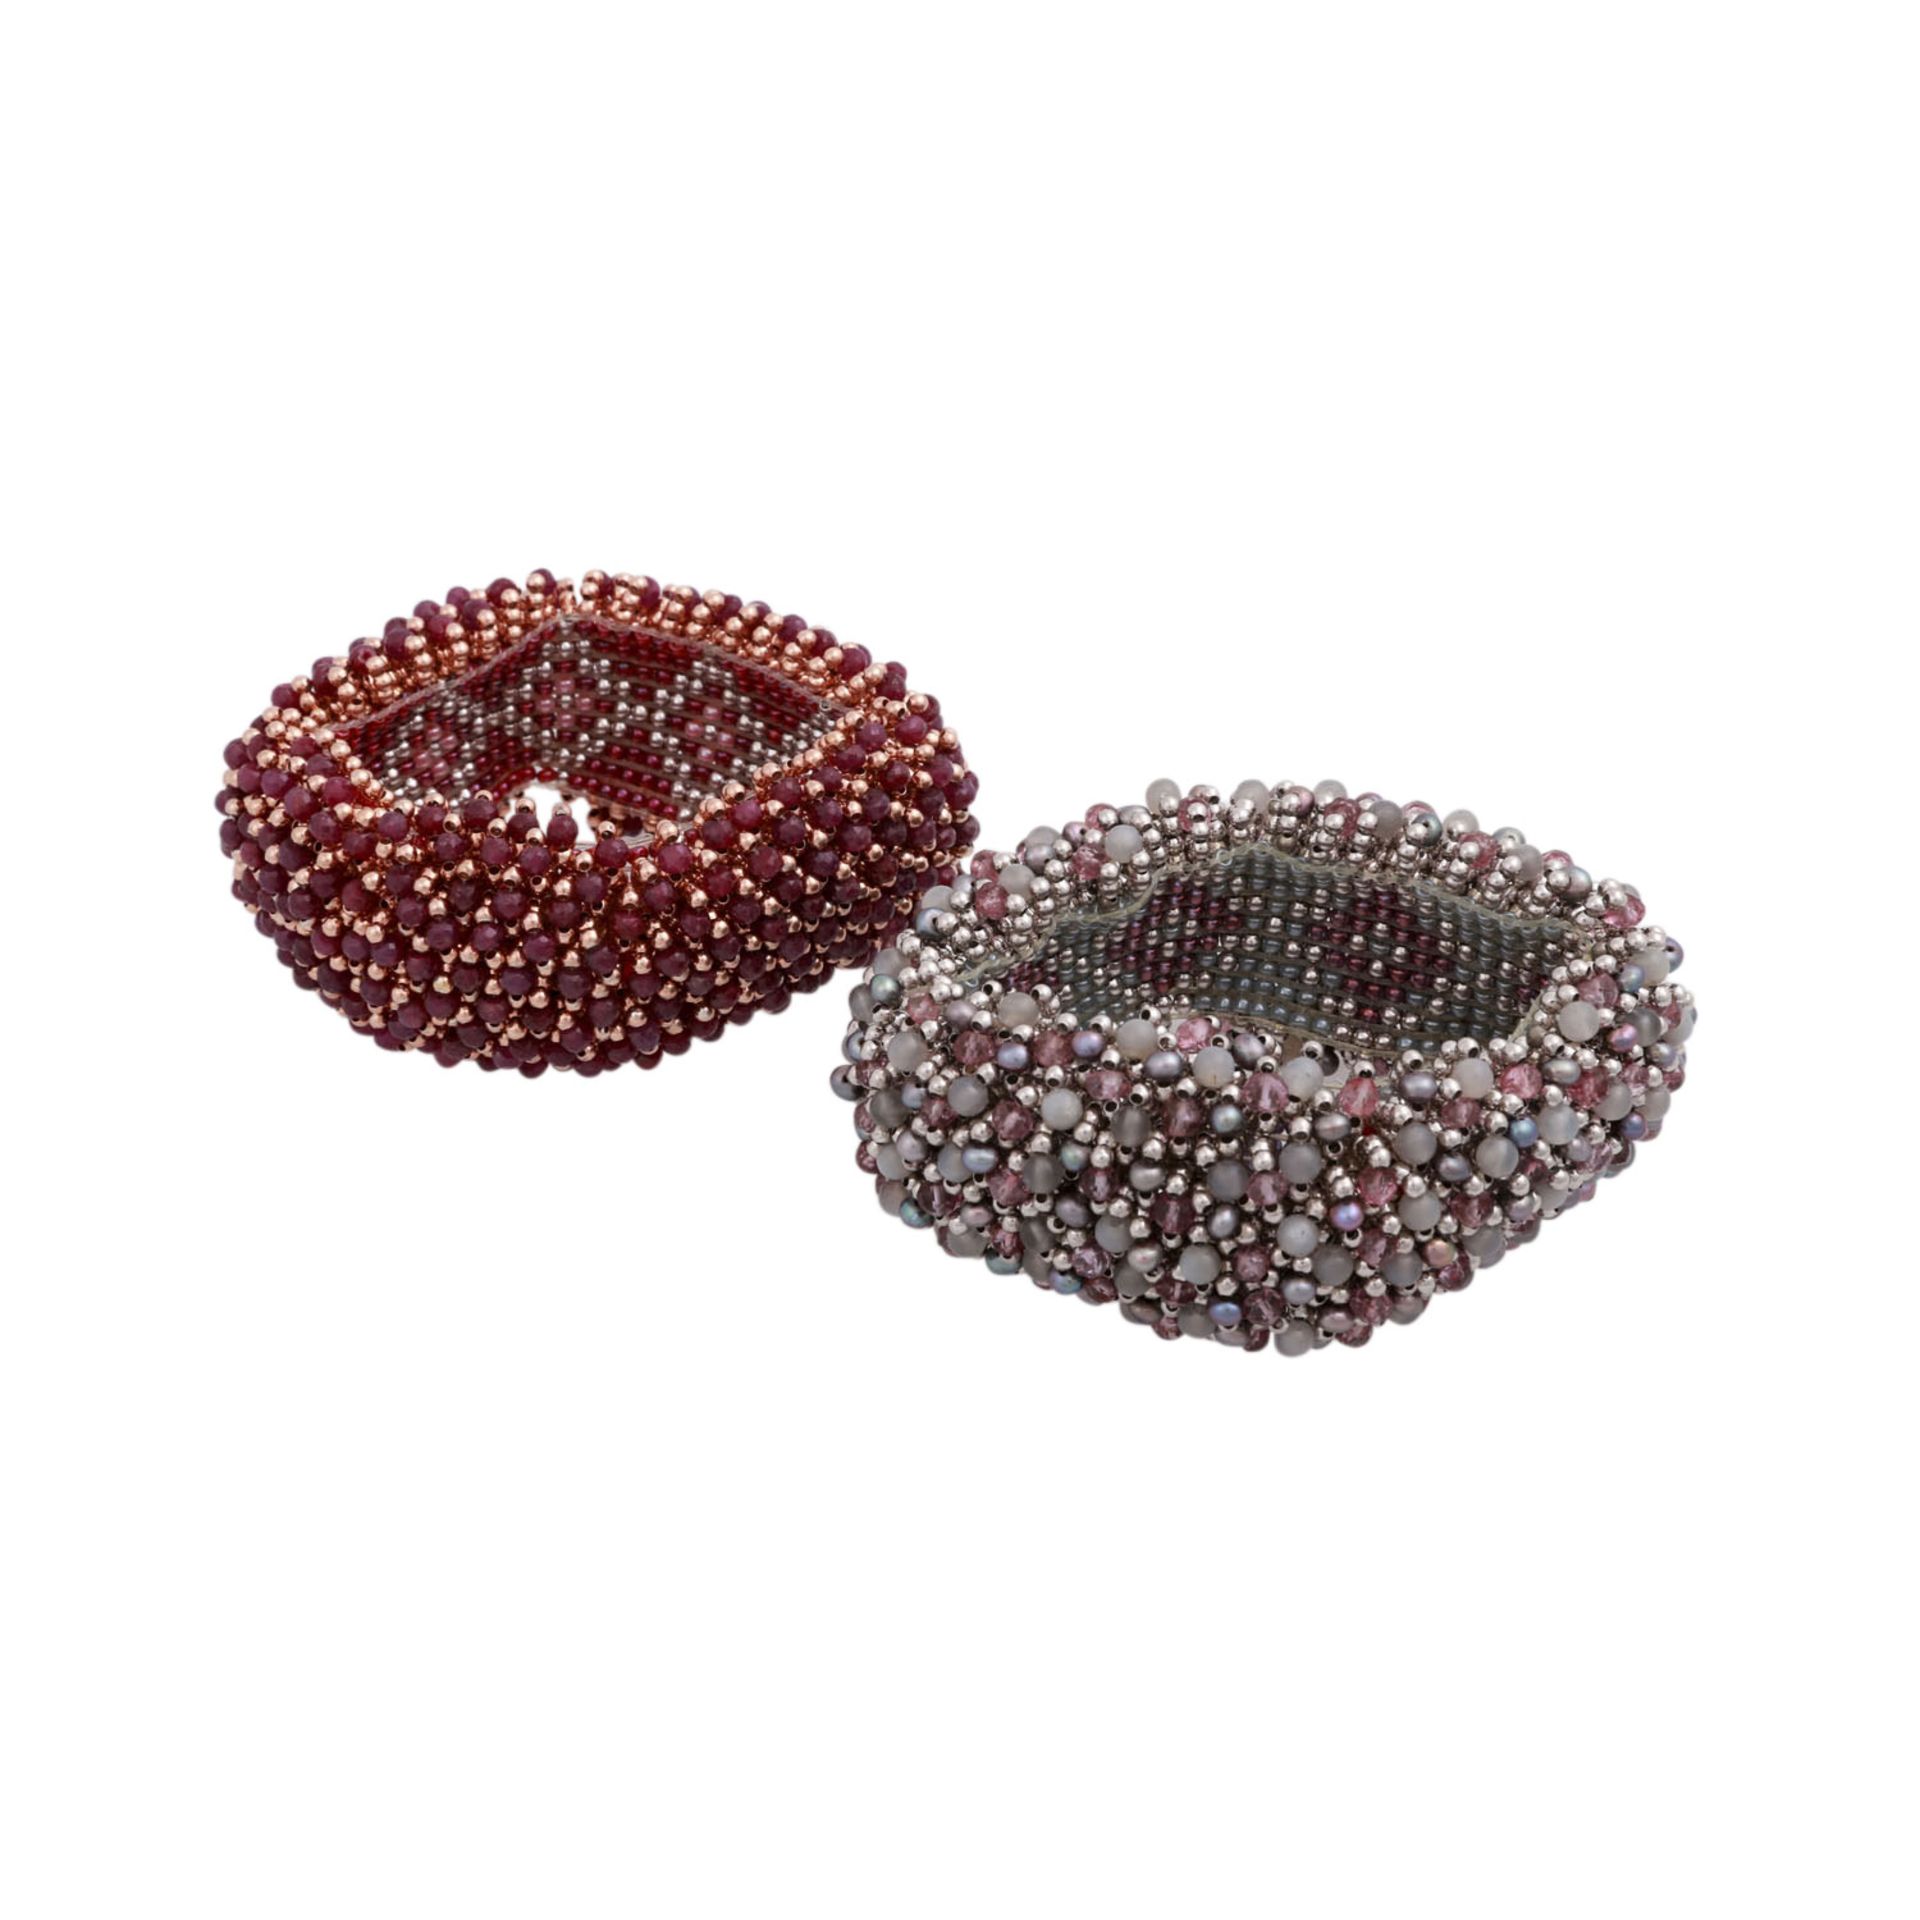 Konvolut aus 2 Armbändern,Perlenwebarbeit mit Rubinen, Quarzen, Zucht- und Glasperlen auf